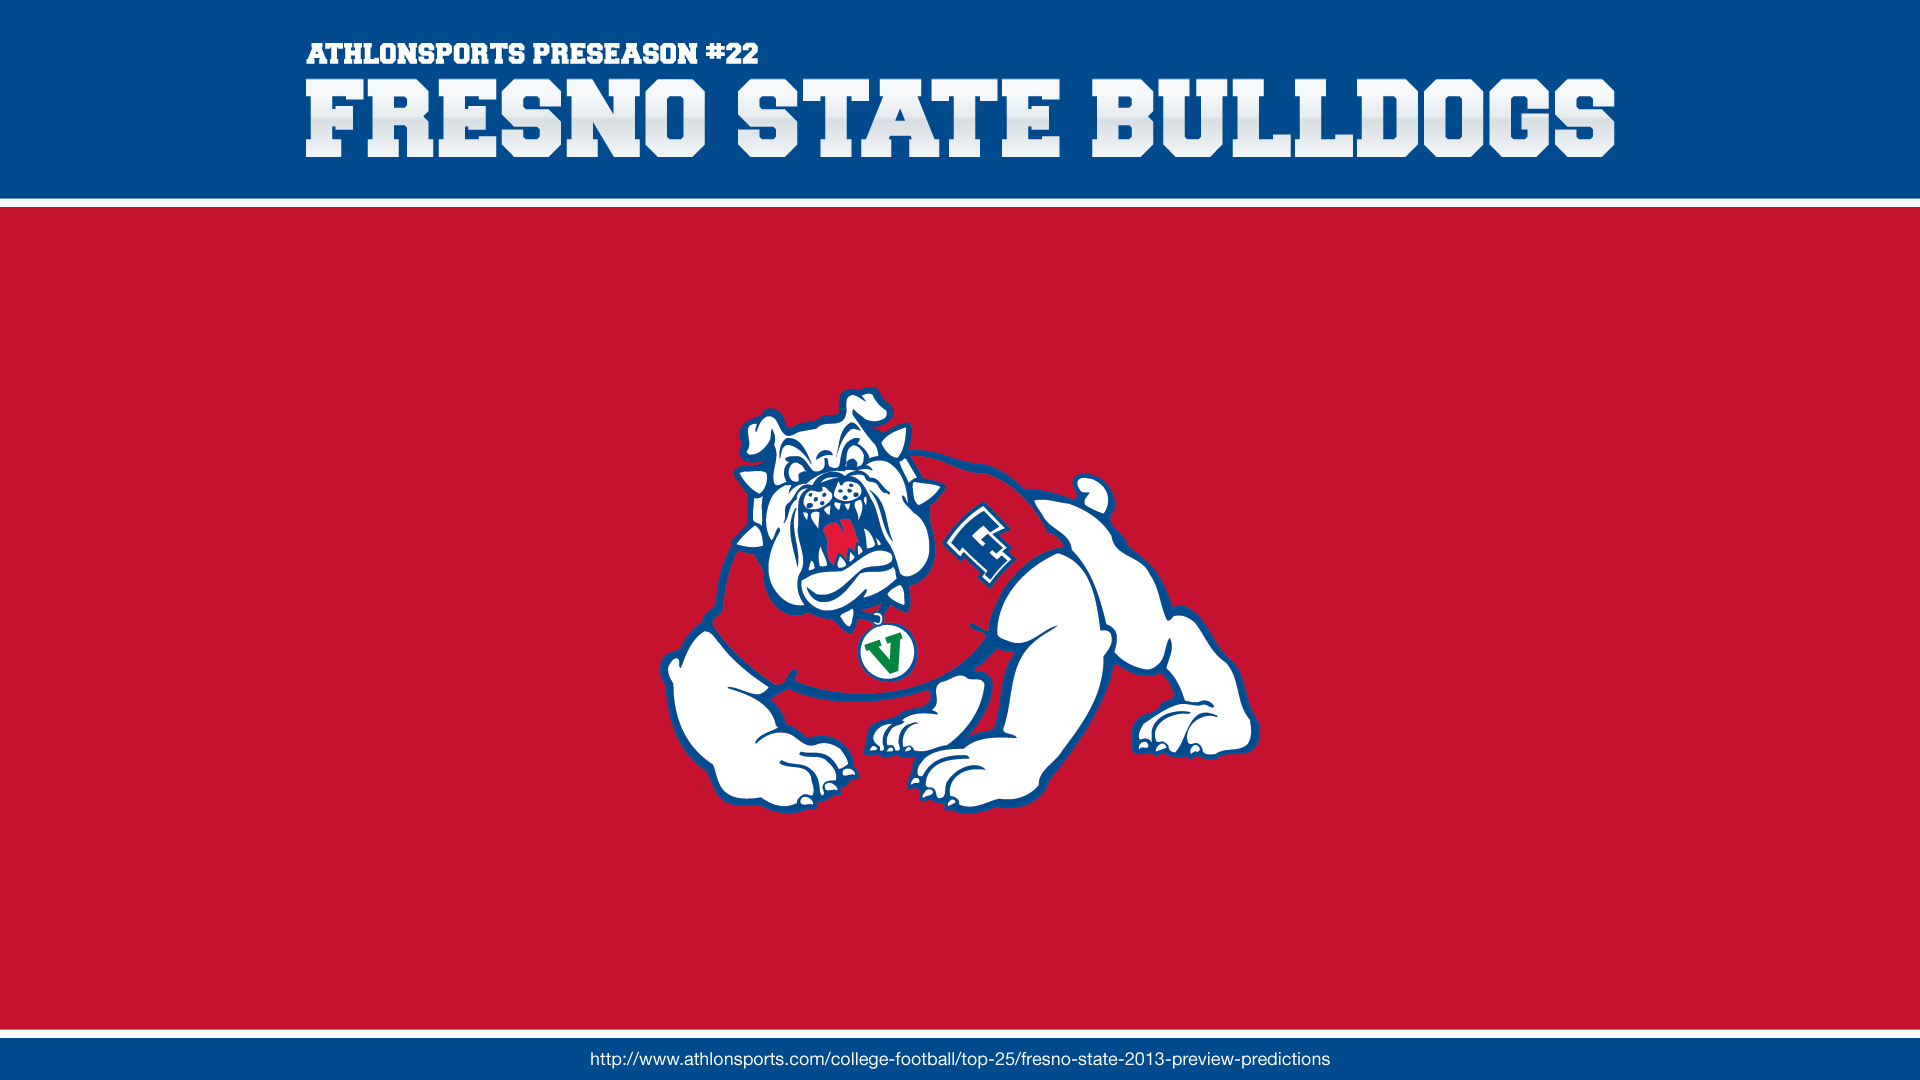 Best Fresno State Bulldogs Wallpaper